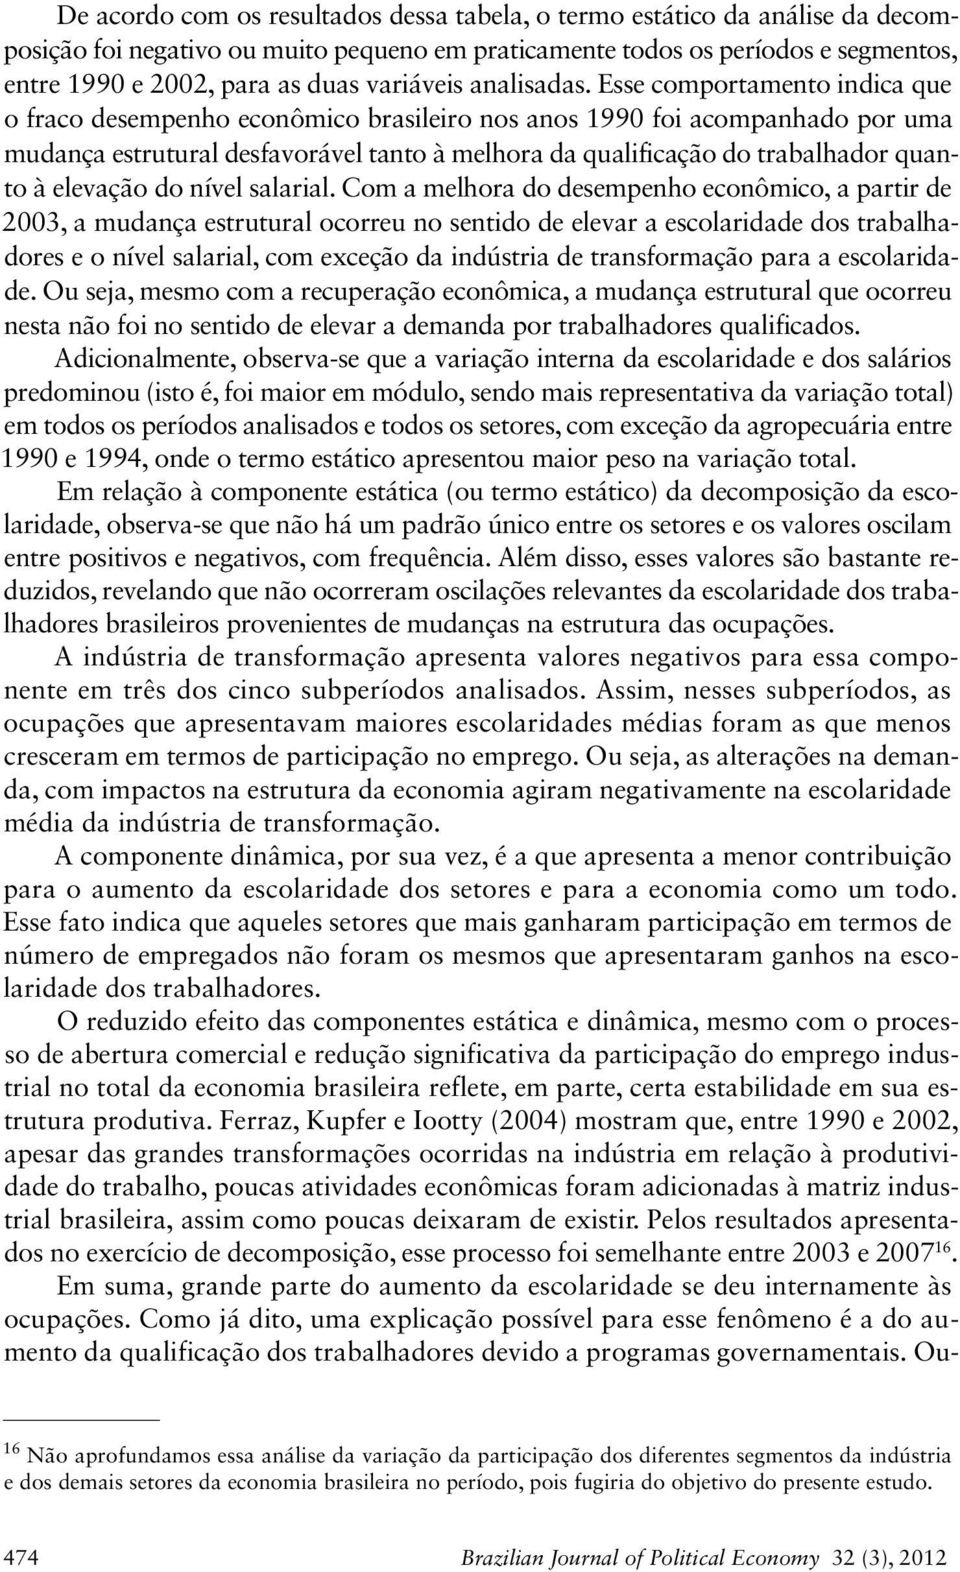 Esse comportamento indica que o fraco desempenho econômico brasileiro nos anos 99 foi acompanhado por uma mudança estrutural desfavorável tanto à melhora da qualificação do trabalhador quanto à